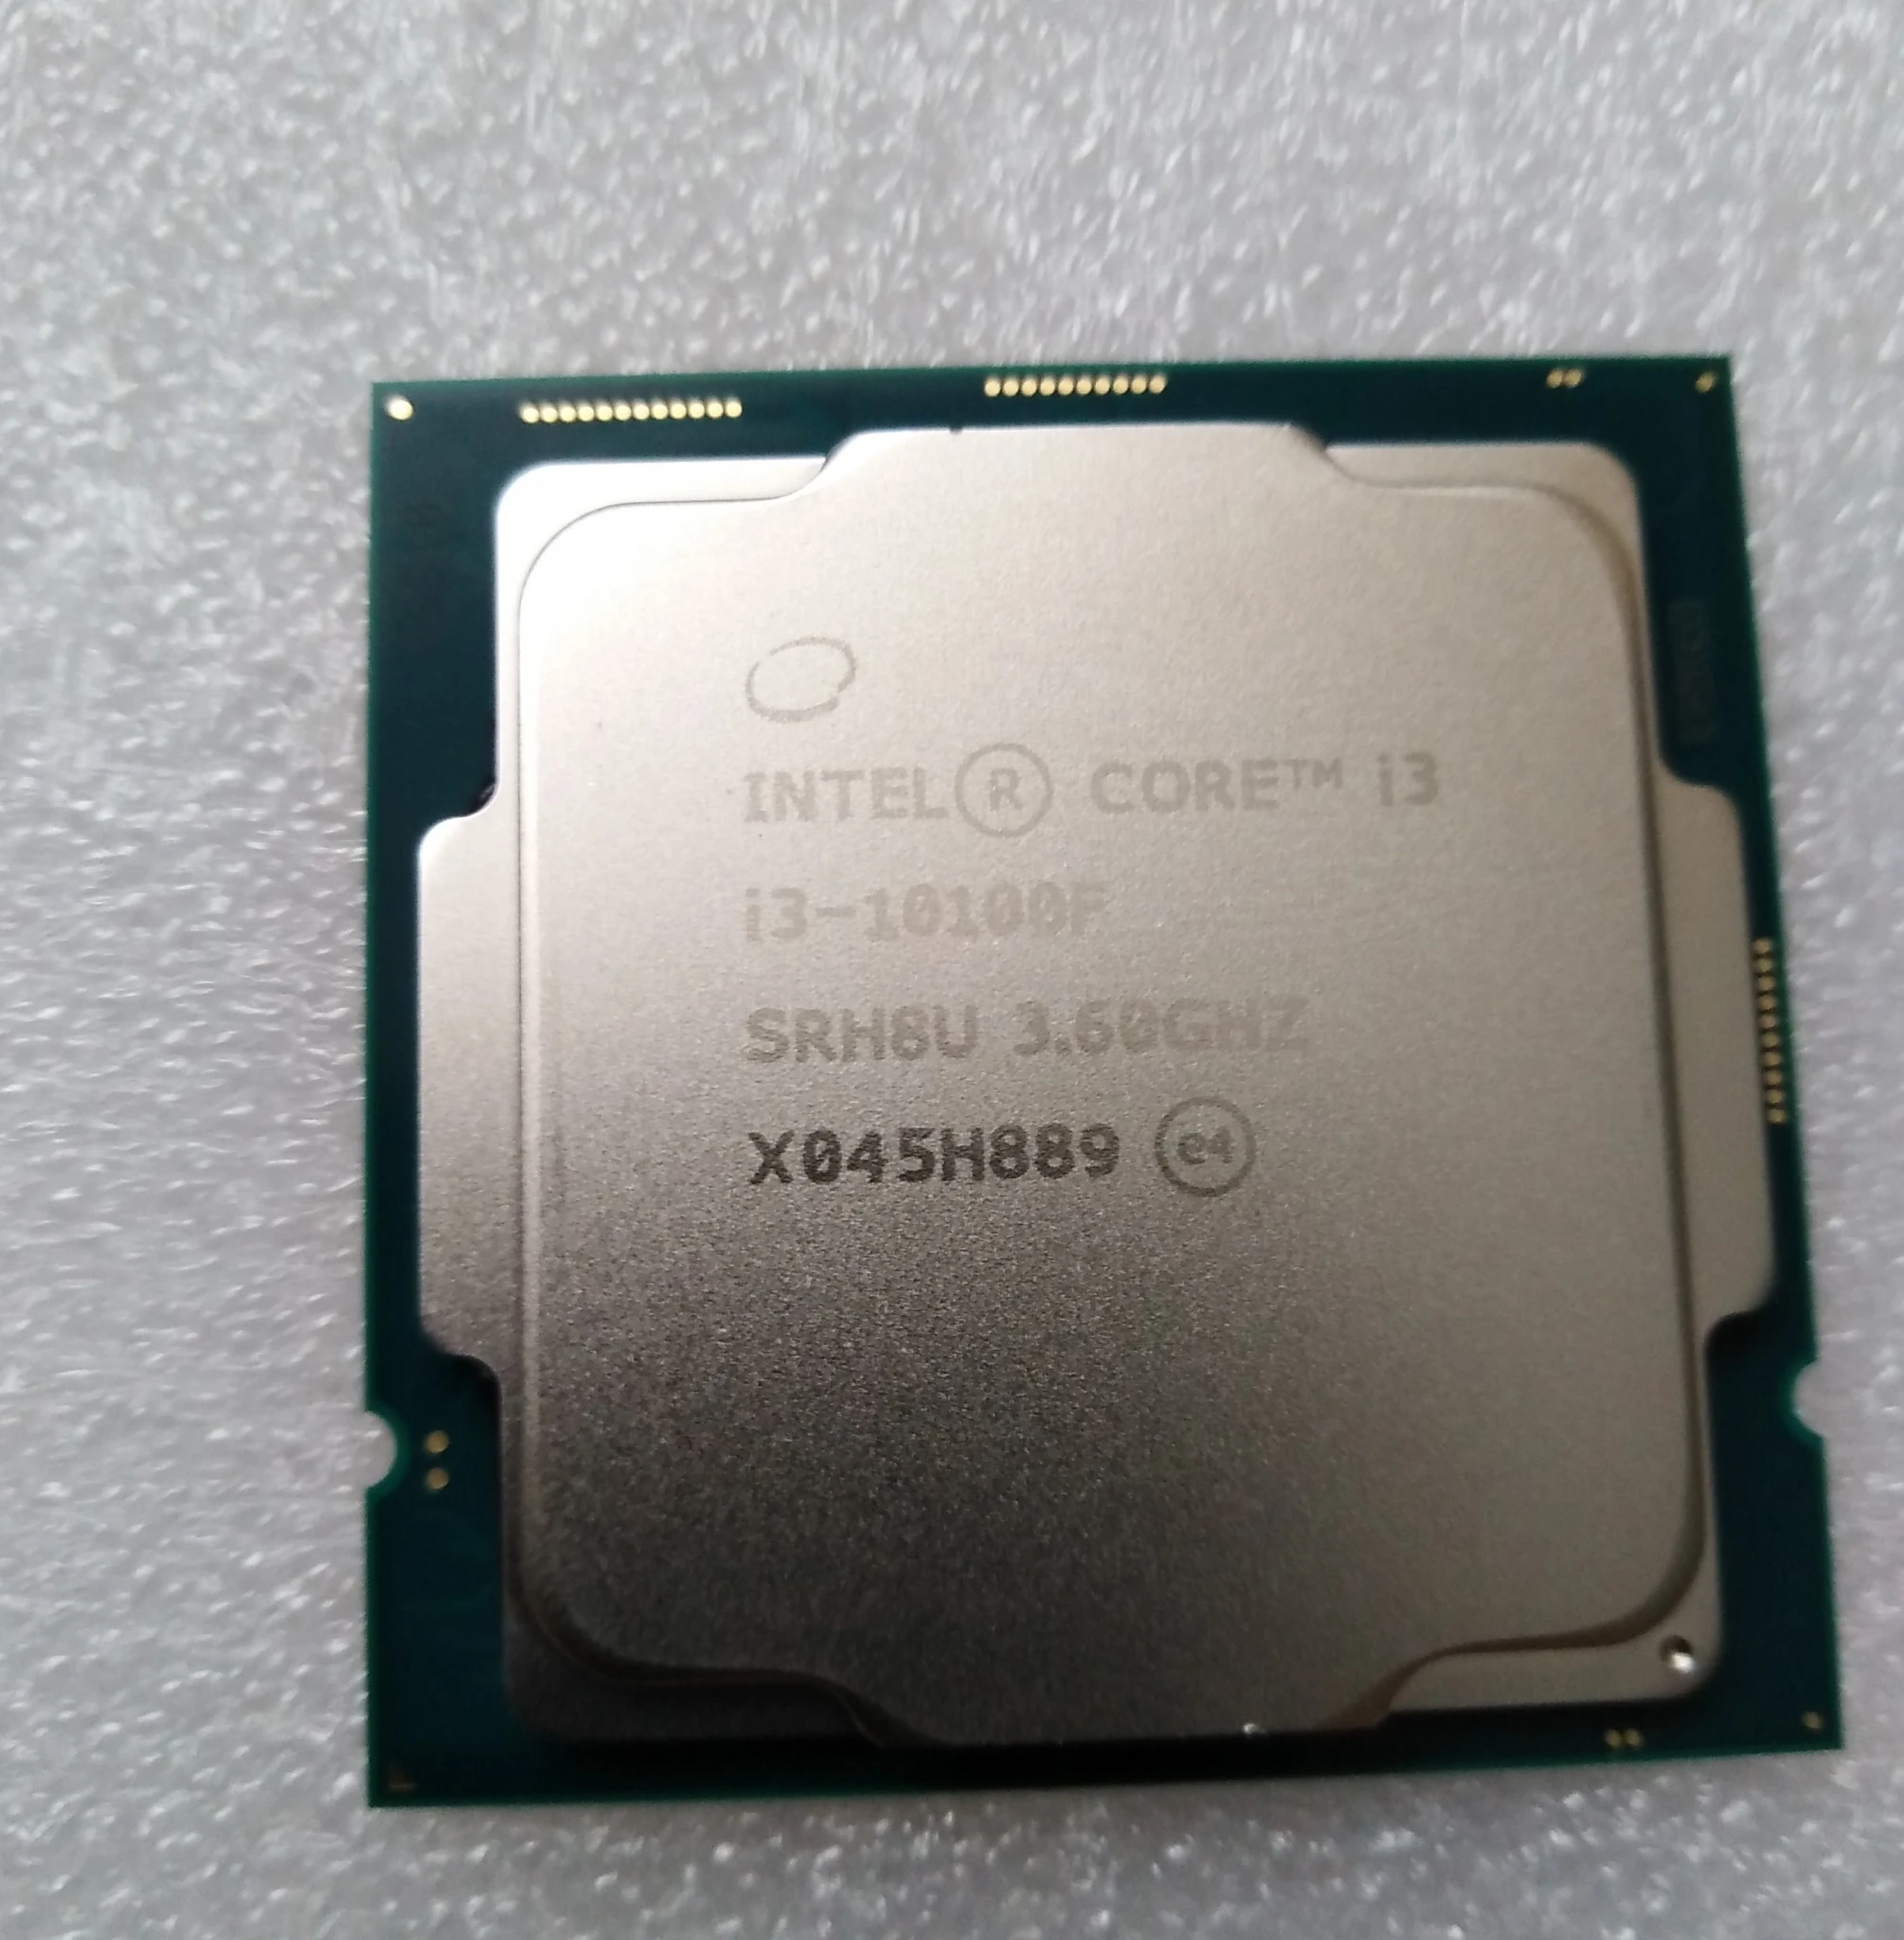 Интел 10100f. Intel Core i3-10100f. Интел кор ай 3 10100 ф. Процессор Intel Core i3-10100f Box. Intel Core i3 10100f OEM.